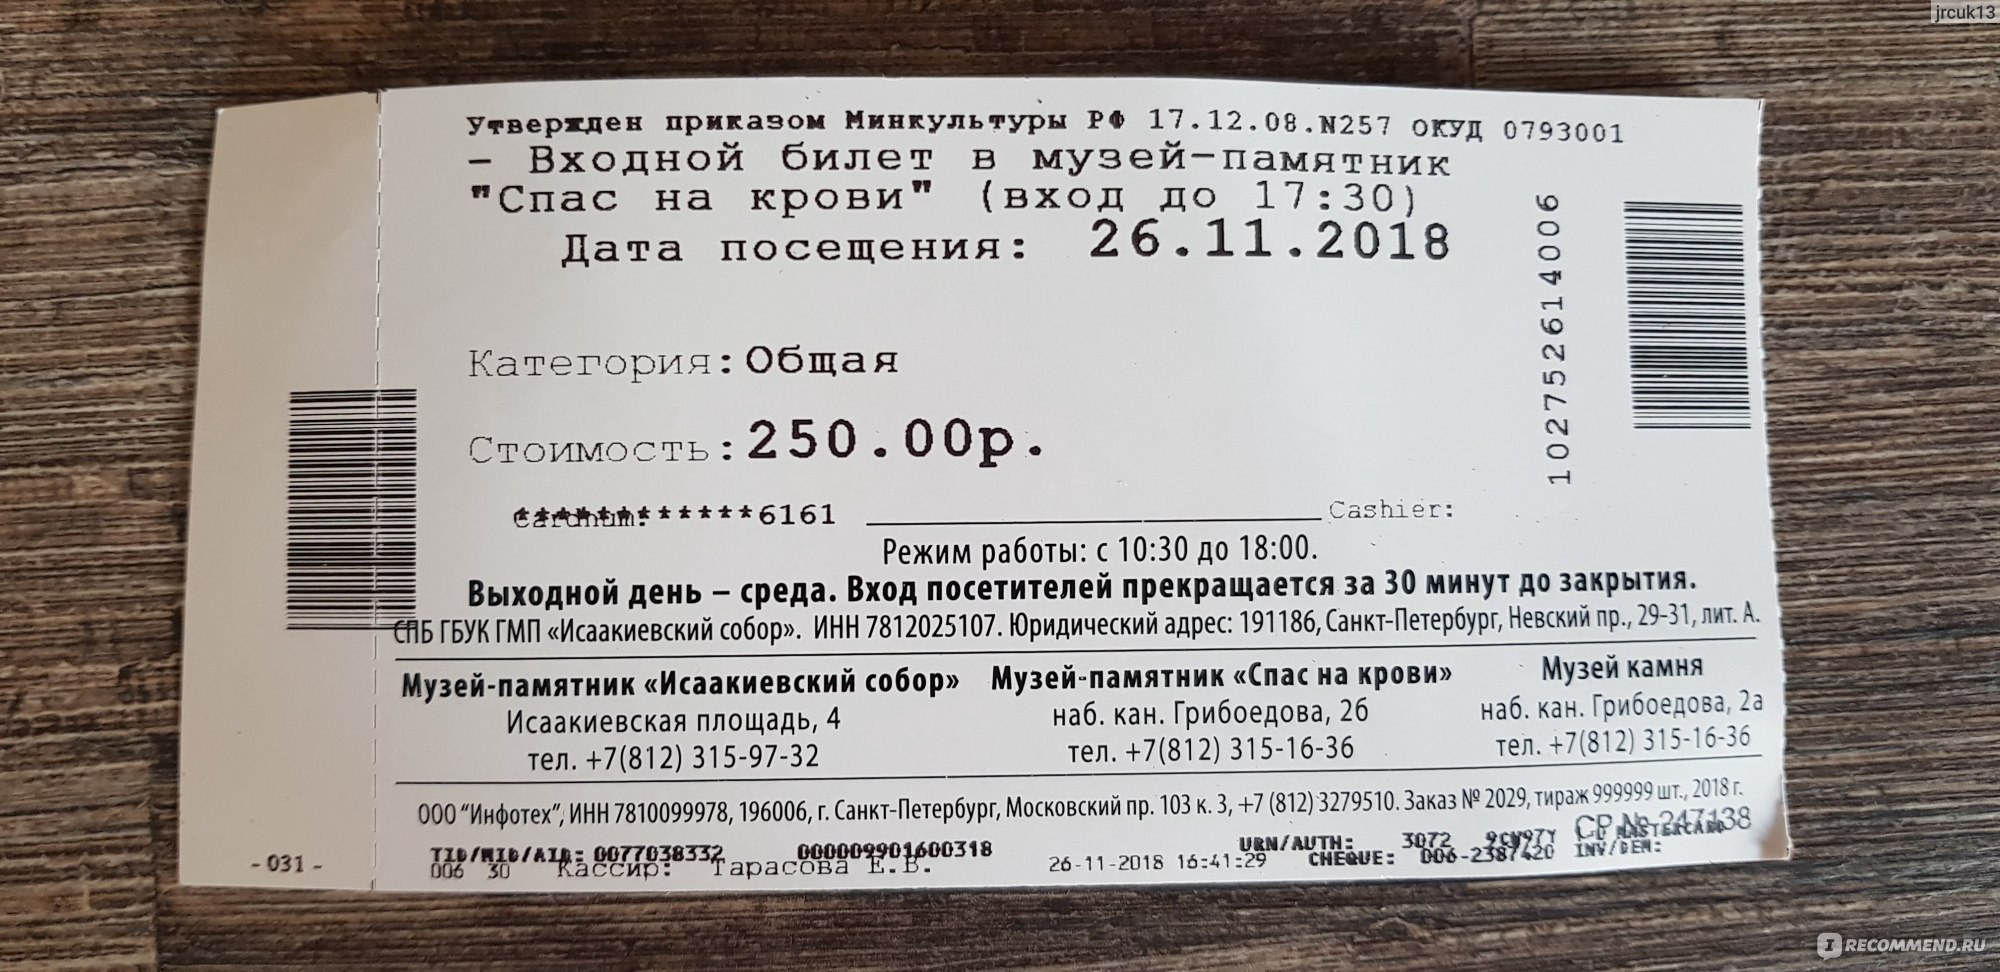 Основное питание входит в билет. Спас на крови билеты. Спас на крови стоимость билетов. Спас на крови Санкт-Петербург билеты. Спас на крови входной билет.